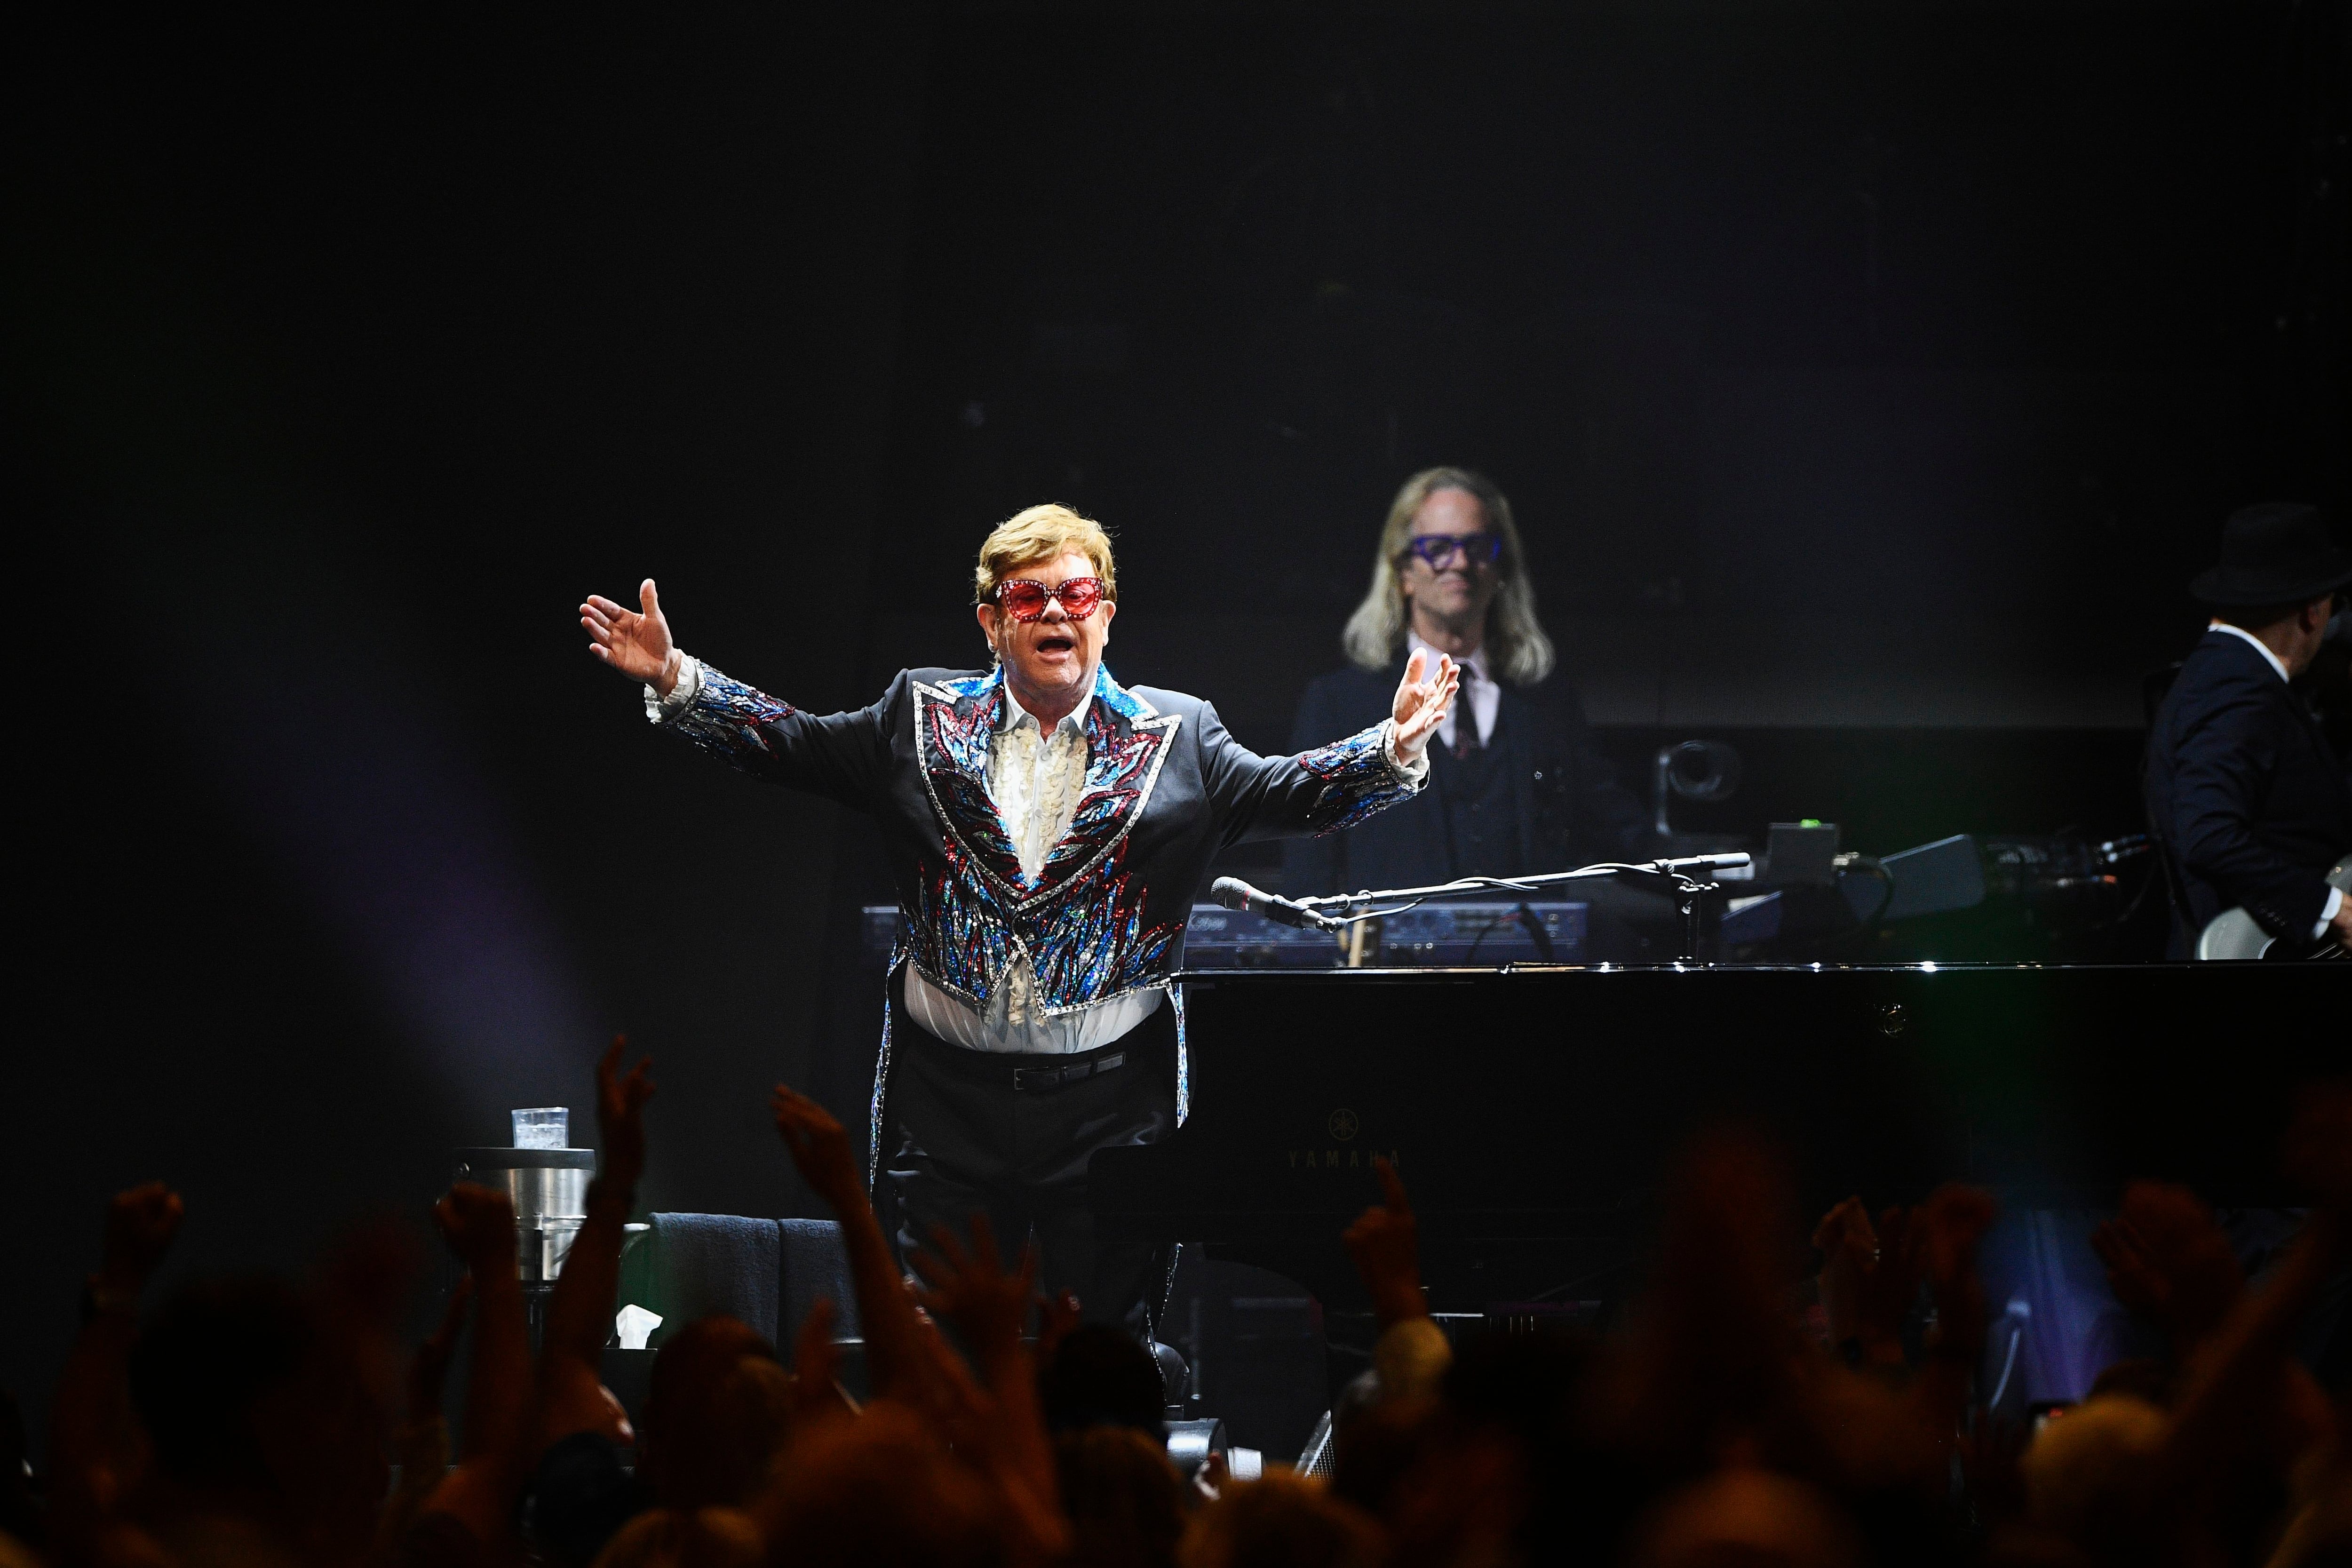 La gira de despedida de Elton John generó USD 875 millones de dólares, siendo considerada la más lucrativa de la historia. Se pronostica que The Eras Tour alcance los USD 1000 millones de dólares   (AP Photo/Caisa Rasmussen)